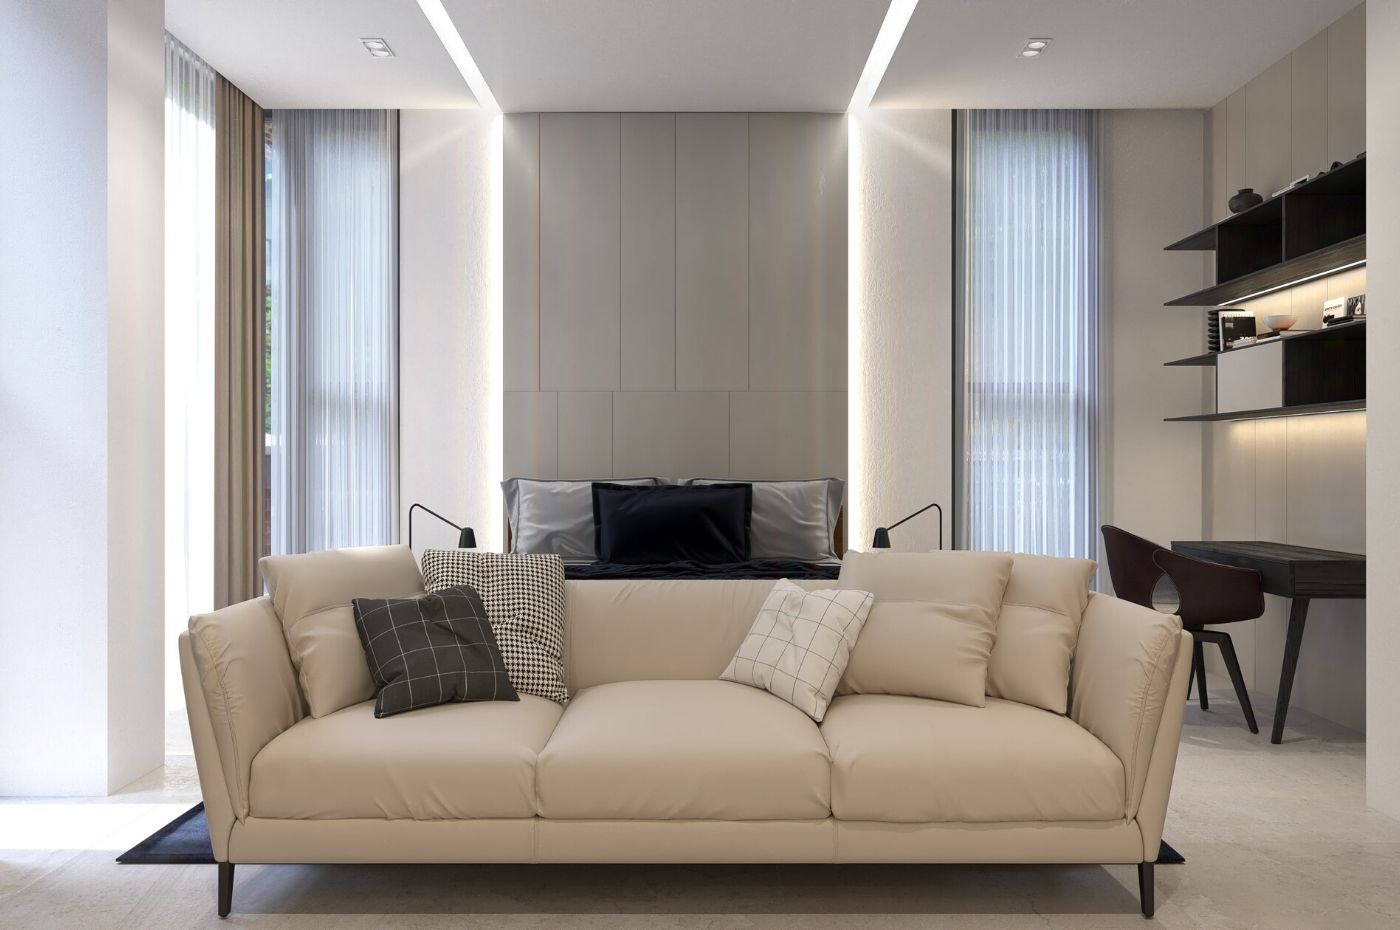 Thiết kế nội thất phòng khách với những chiếc sofa lạ mắt